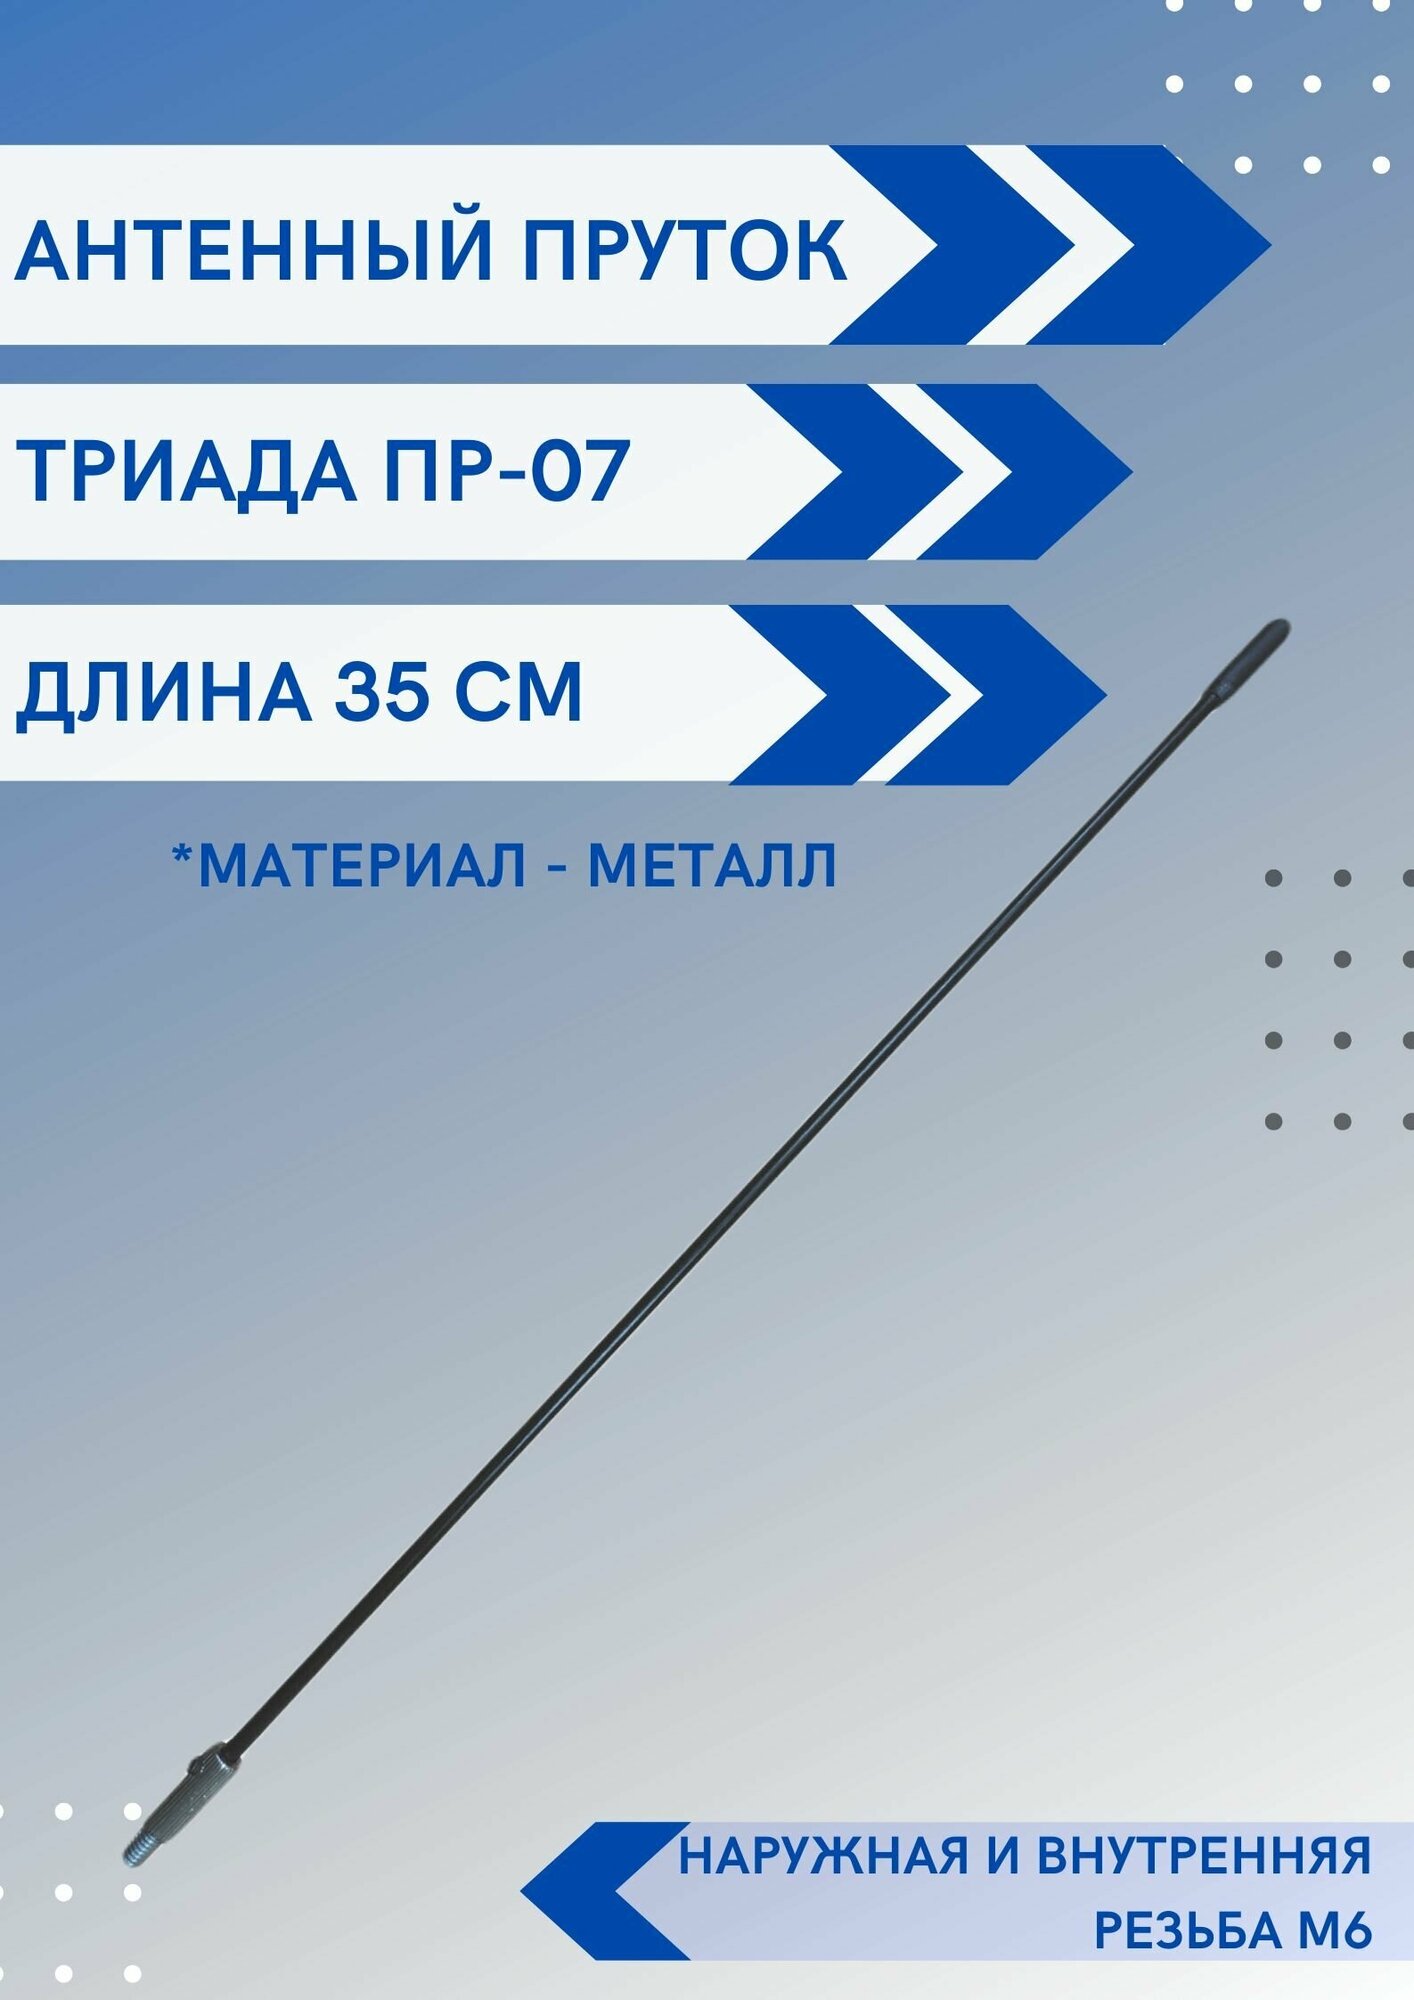 Ремкомплект Триада Пр-07 пруток антенны универсальный, длина 35 см